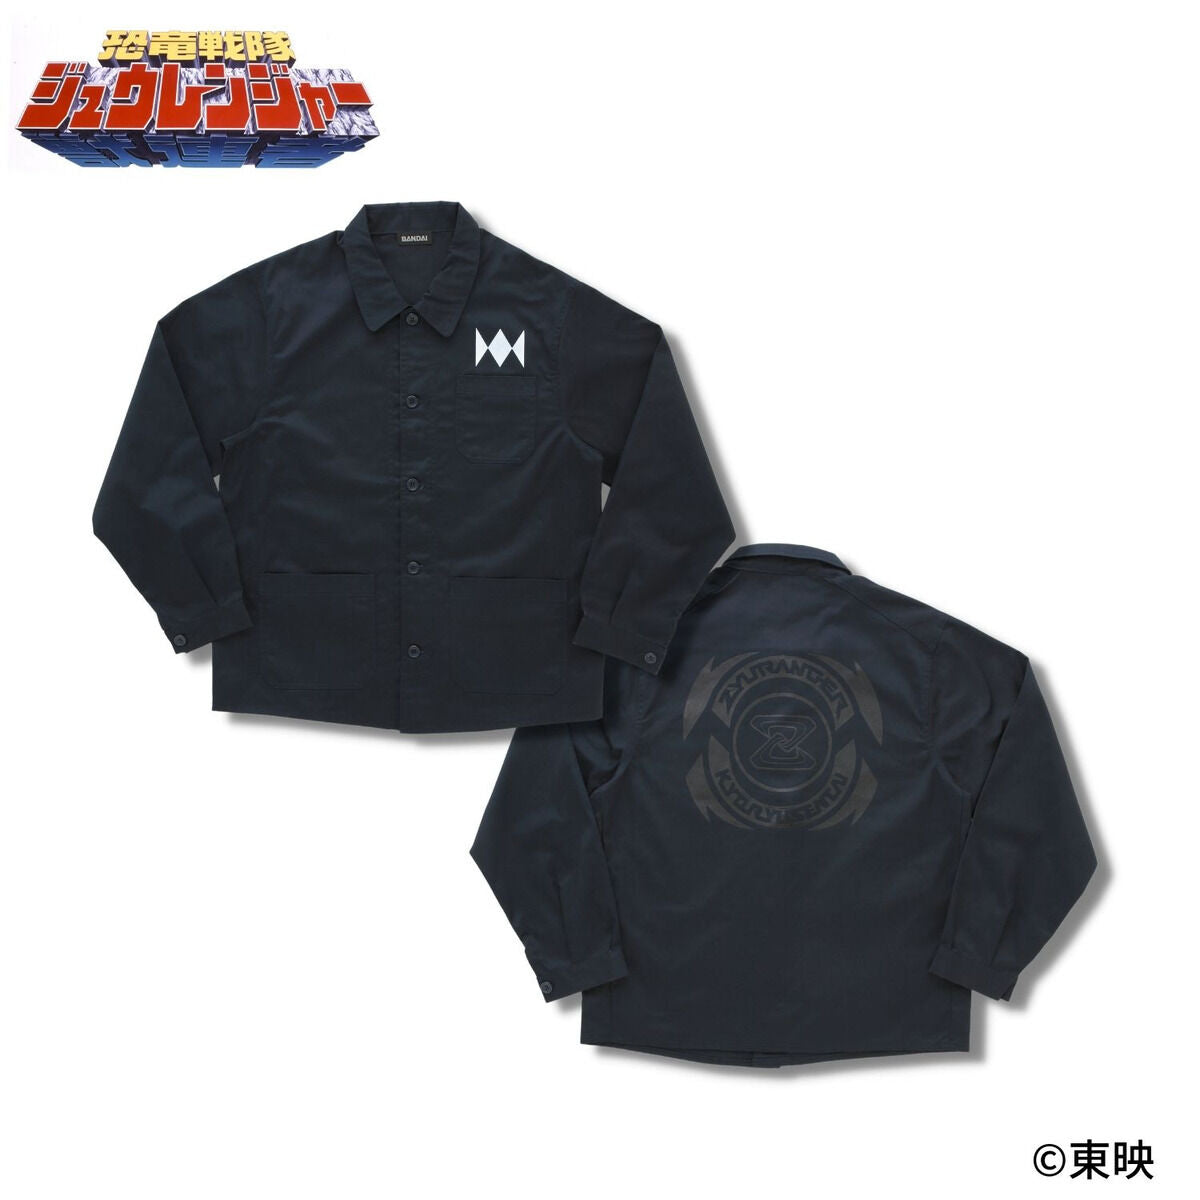 30th Anniversary Zyuranger Jacket